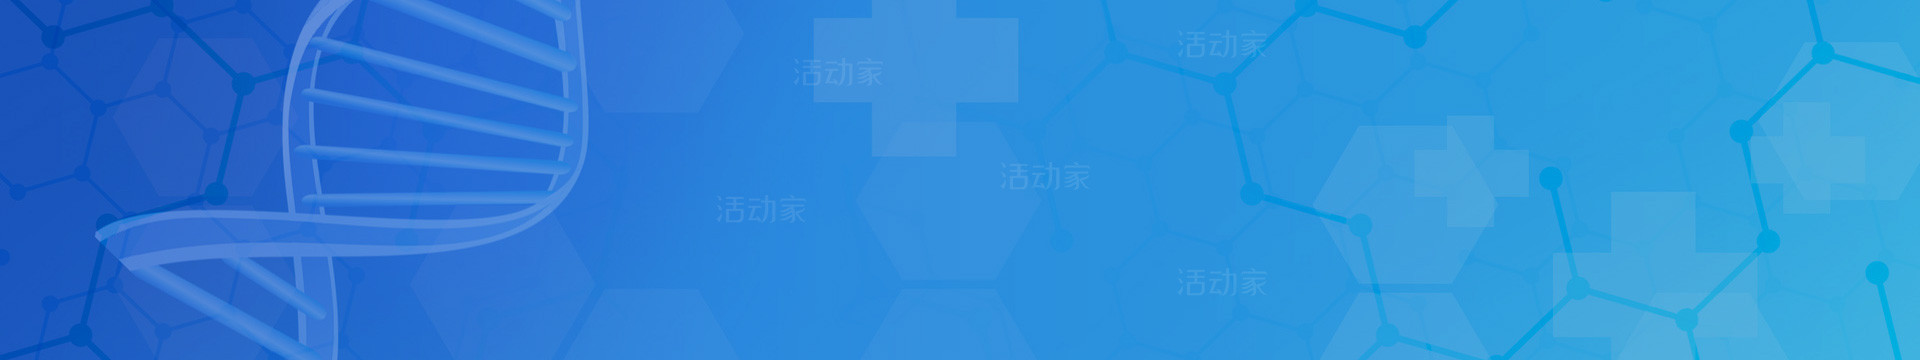 2021（第四届）中国国际生物医药大会暨展览会